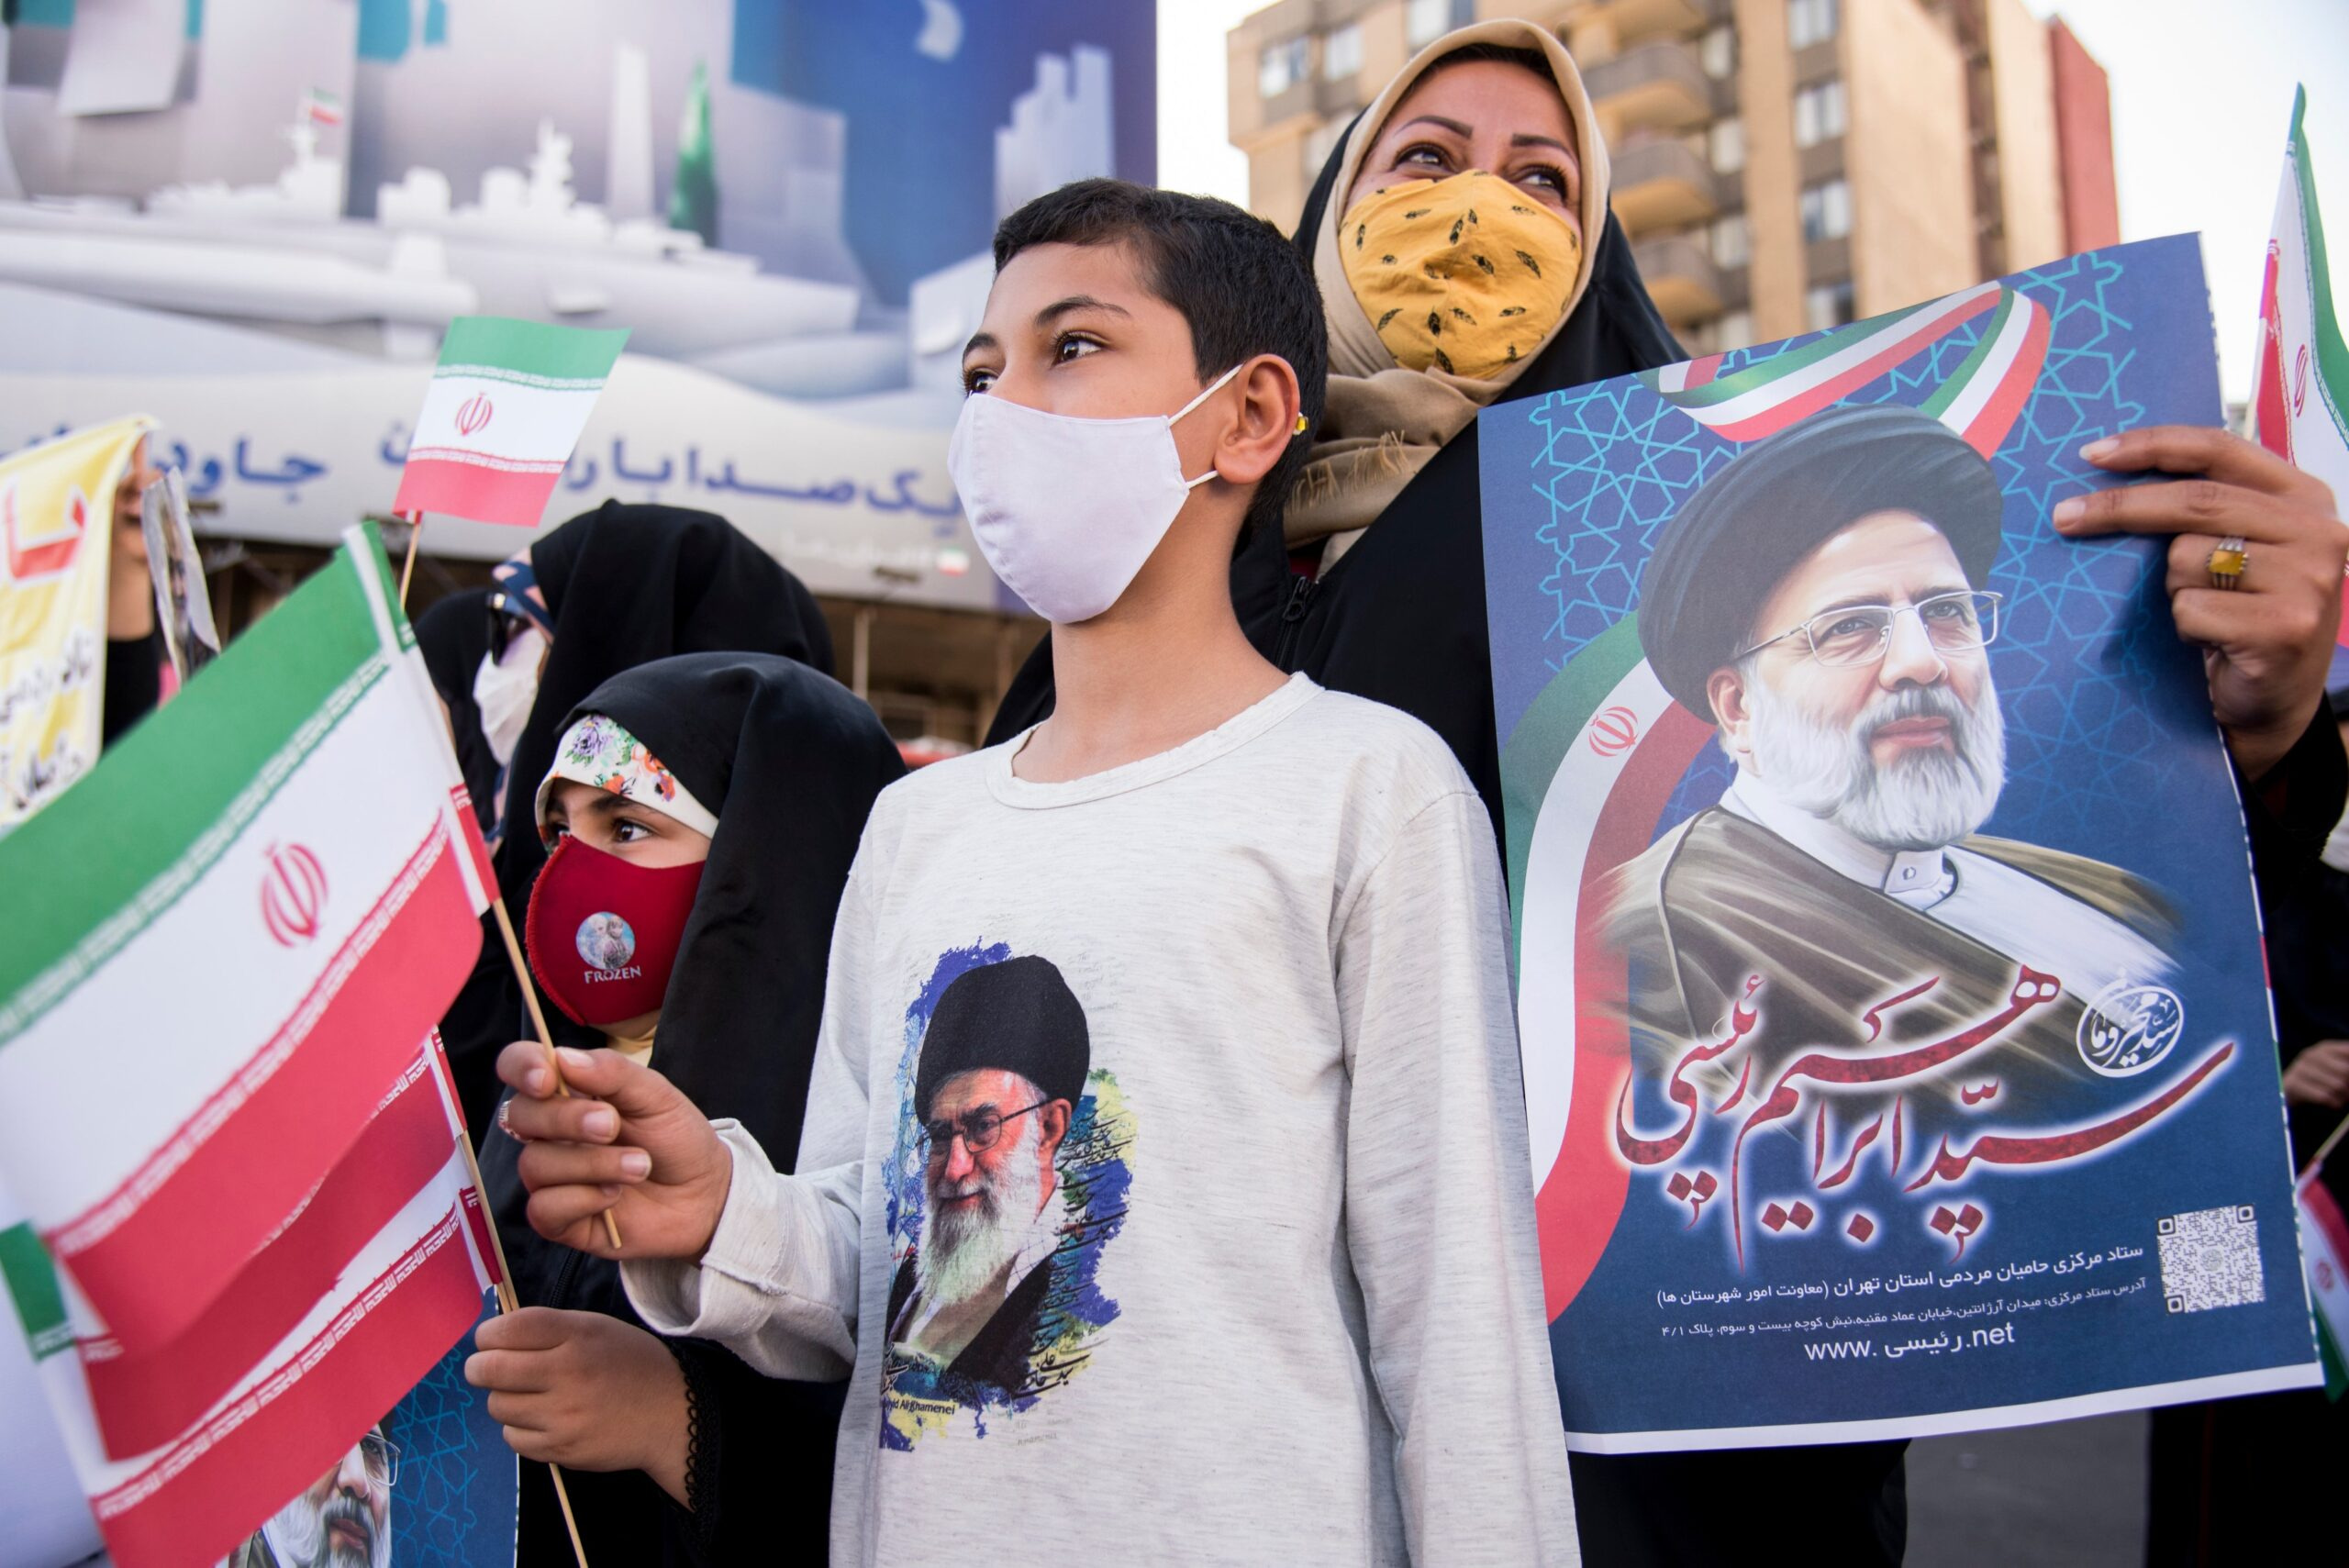 Podporovatelé prezidentského kandidáta Ebrahíma Raisího s podobiznami nejvyššího duchovního vůdce země ájjatoláha Chameneího. Teherán, 11. června 2021.